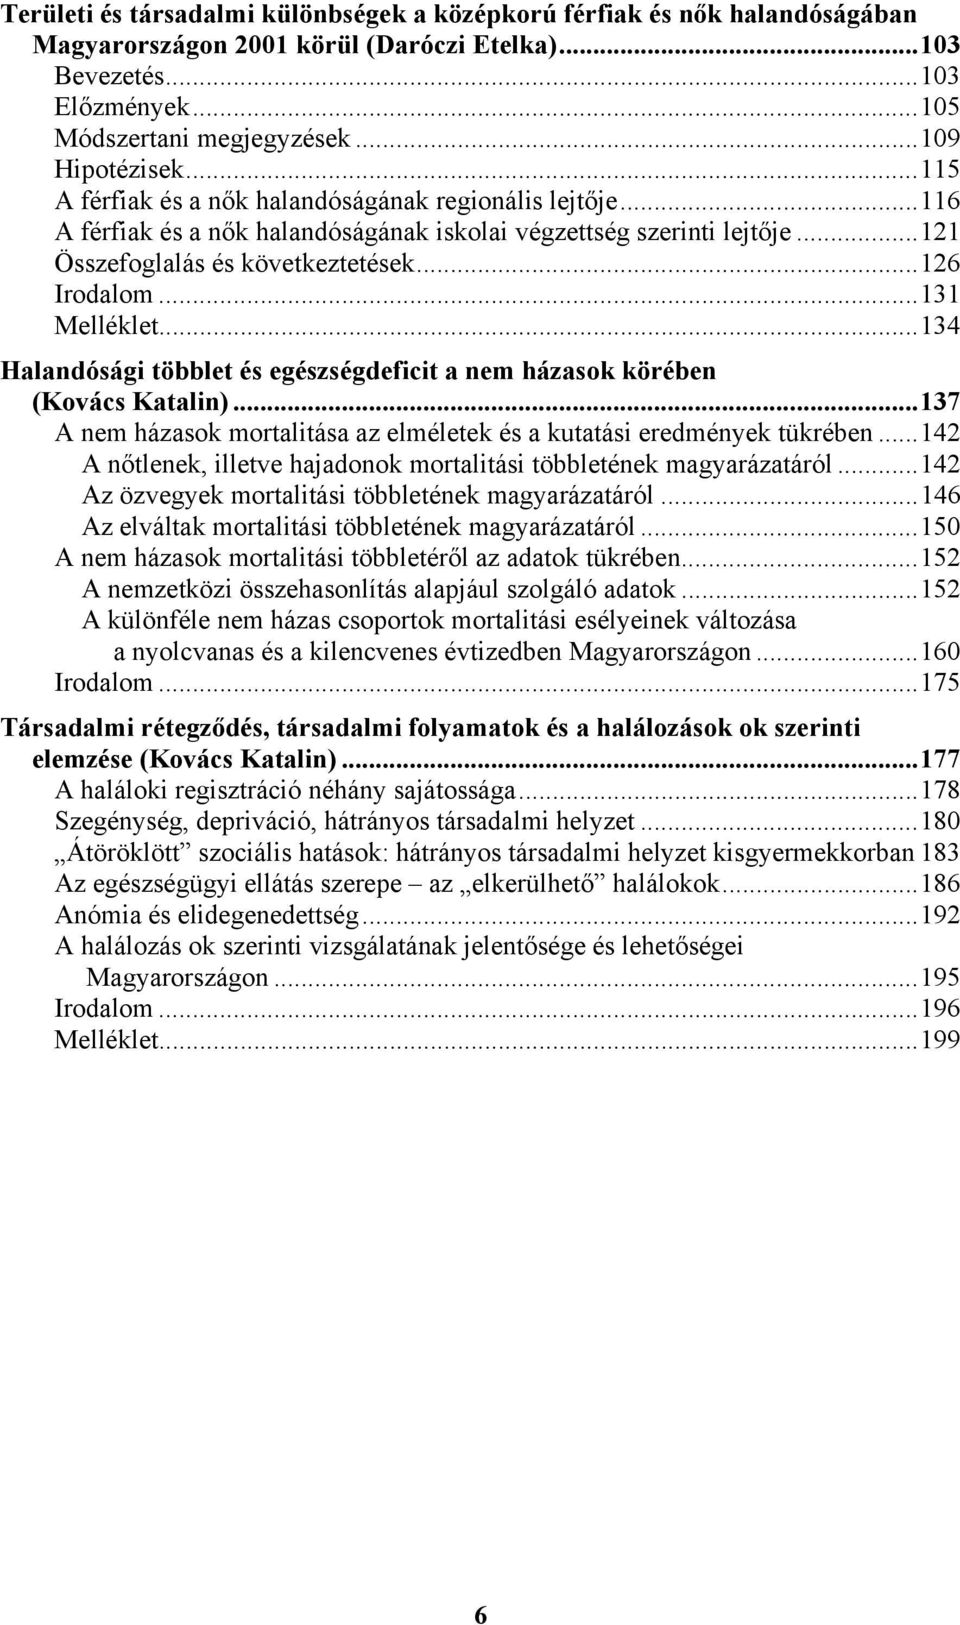 ..131 Melléklet...134 Halandósági többlet és egészségdeficit a nem házasok körében (Kovács Katalin)...137 A nem házasok mortalitása az elméletek és a kutatási eredmények tükrében.